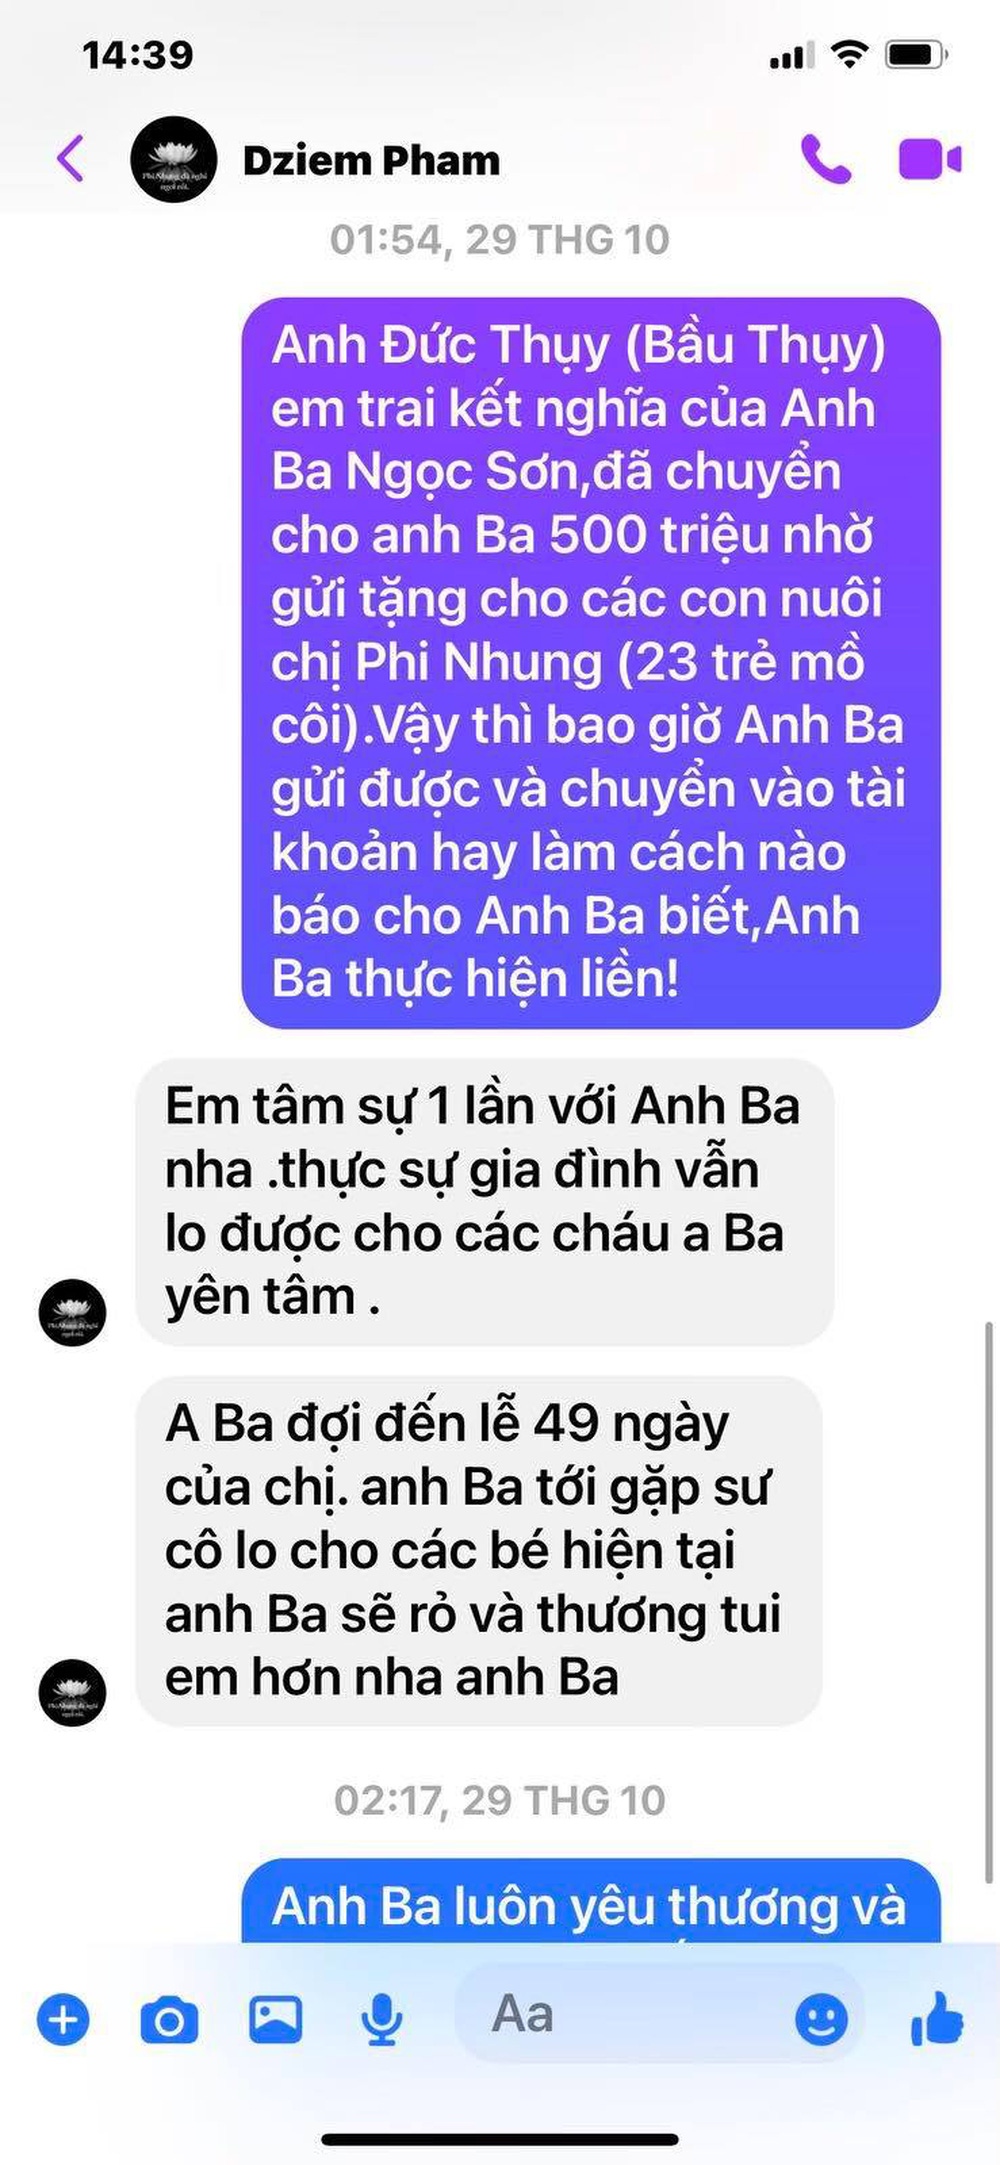 Ngọc Sơn tung đoạn chat với quản lý Phi Nhung khi bị nói làm màu vụ tặng 500 triệu - Ảnh 1.